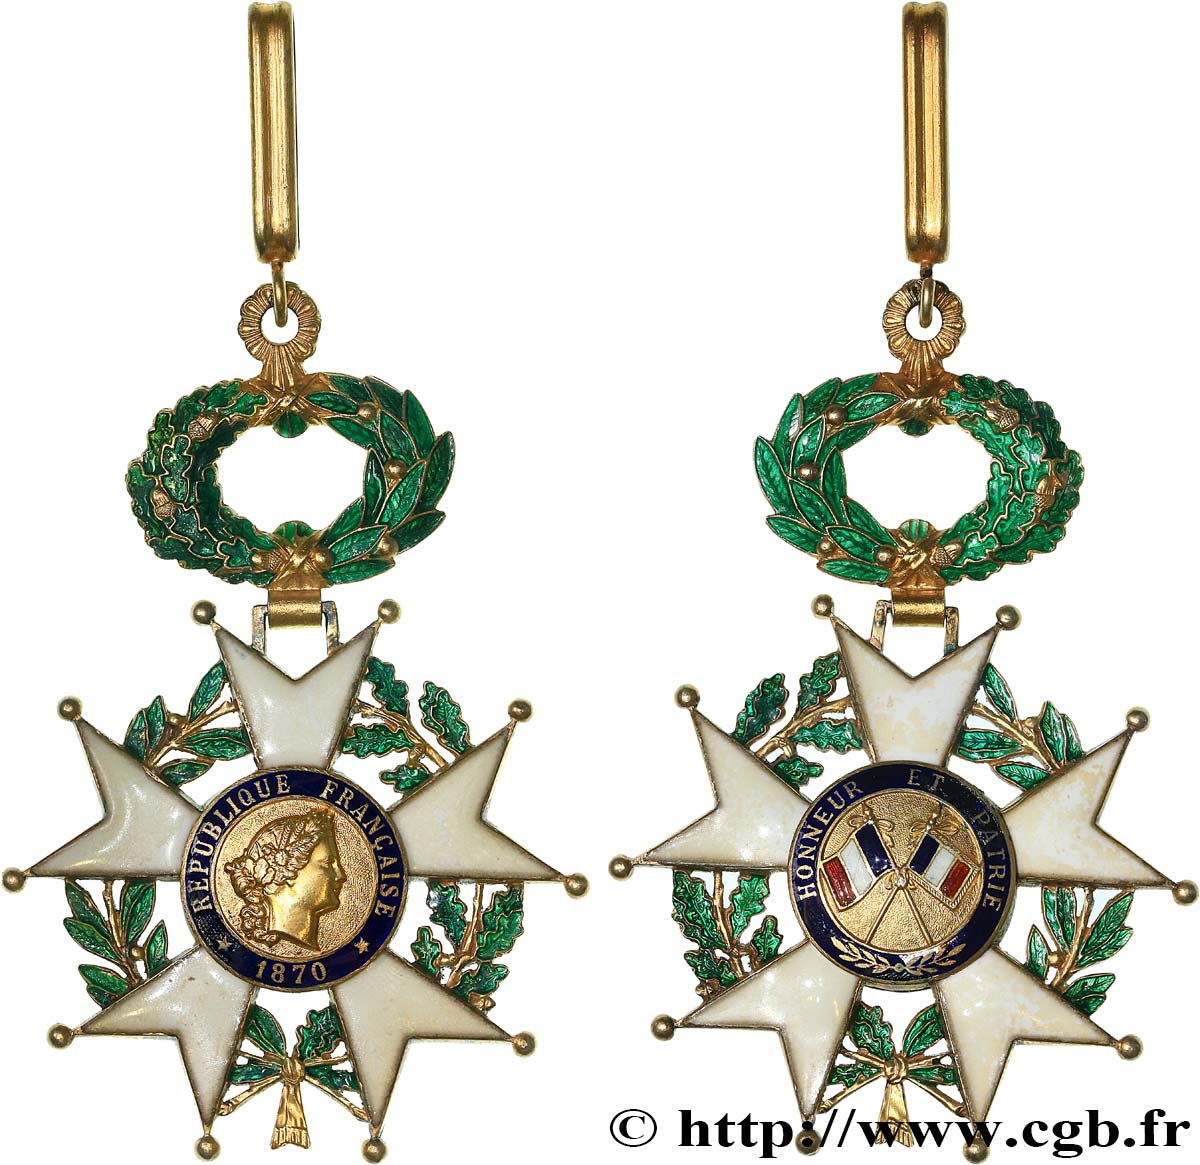 V REPUBLIC Légion d’Honneur - Commandeur AU